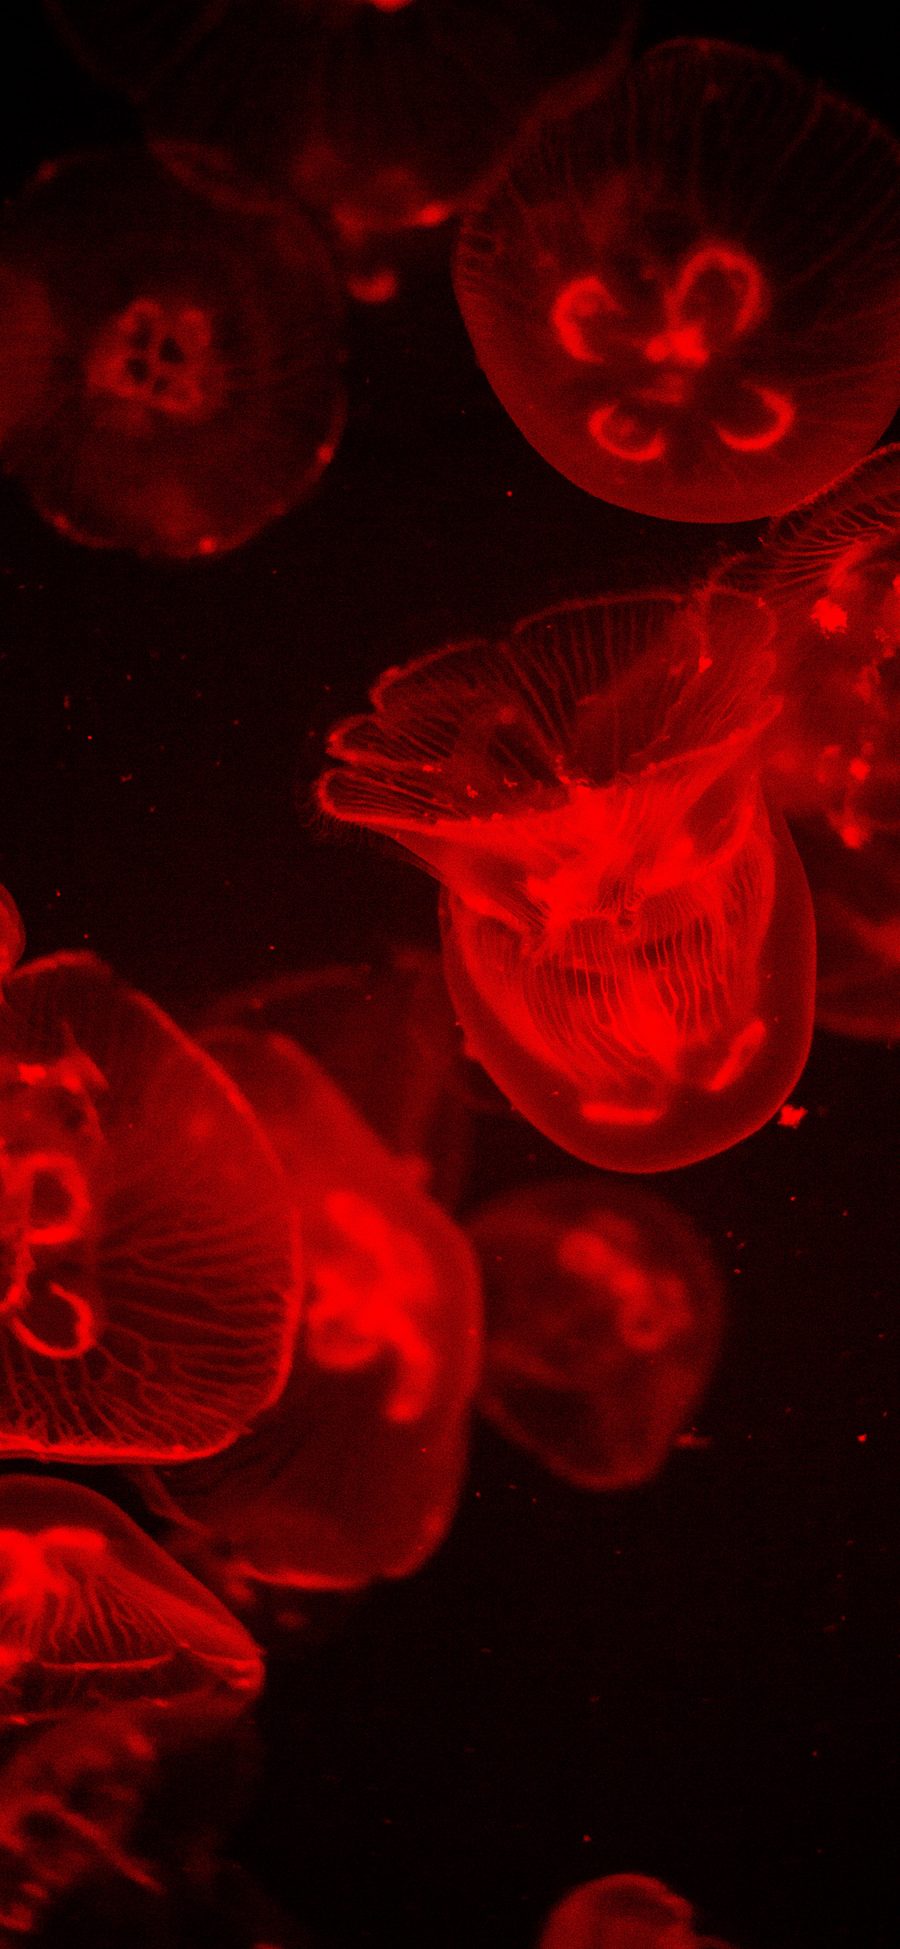 [2436×1125]水母 透明 浮游 红光 苹果手机壁纸图片